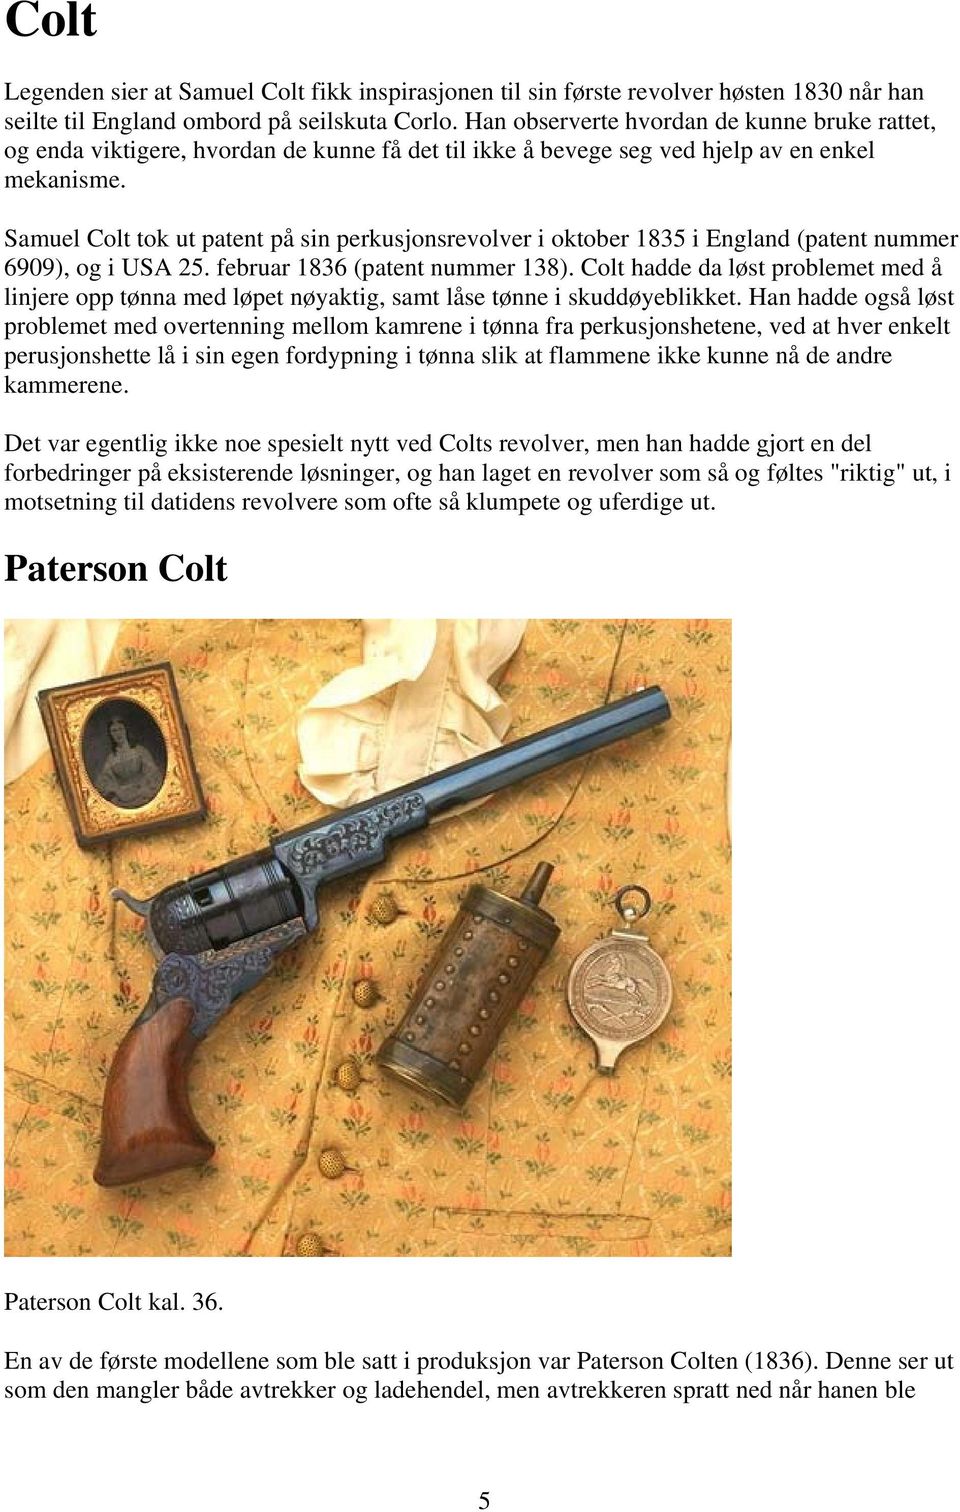 Samuel Colt tok ut patent på sin perkusjonsrevolver i oktober 1835 i England (patent nummer 6909), og i USA 25. februar 1836 (patent nummer 138).